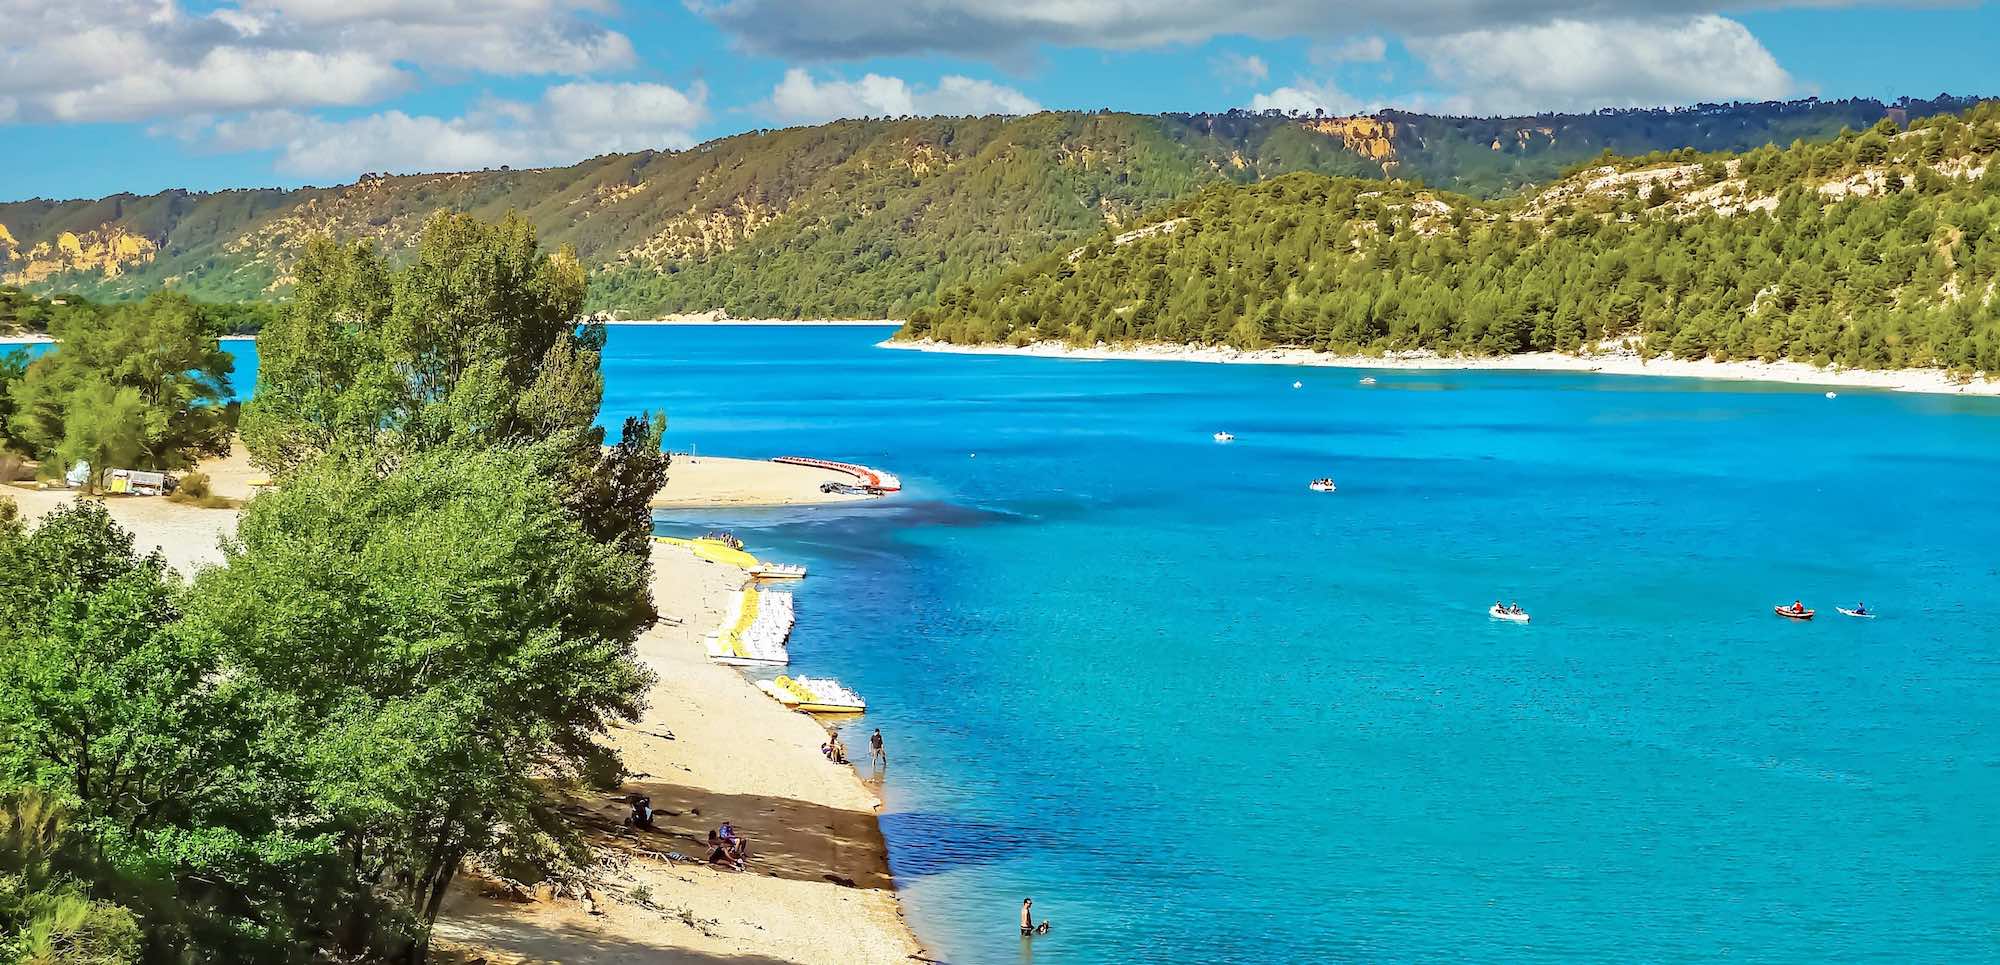 Le Mag Camping - Bon plan exceptionnel : séjournez 8 jours au Lac de Sainte-Croix pour seulement 74 euros par personne en aout!